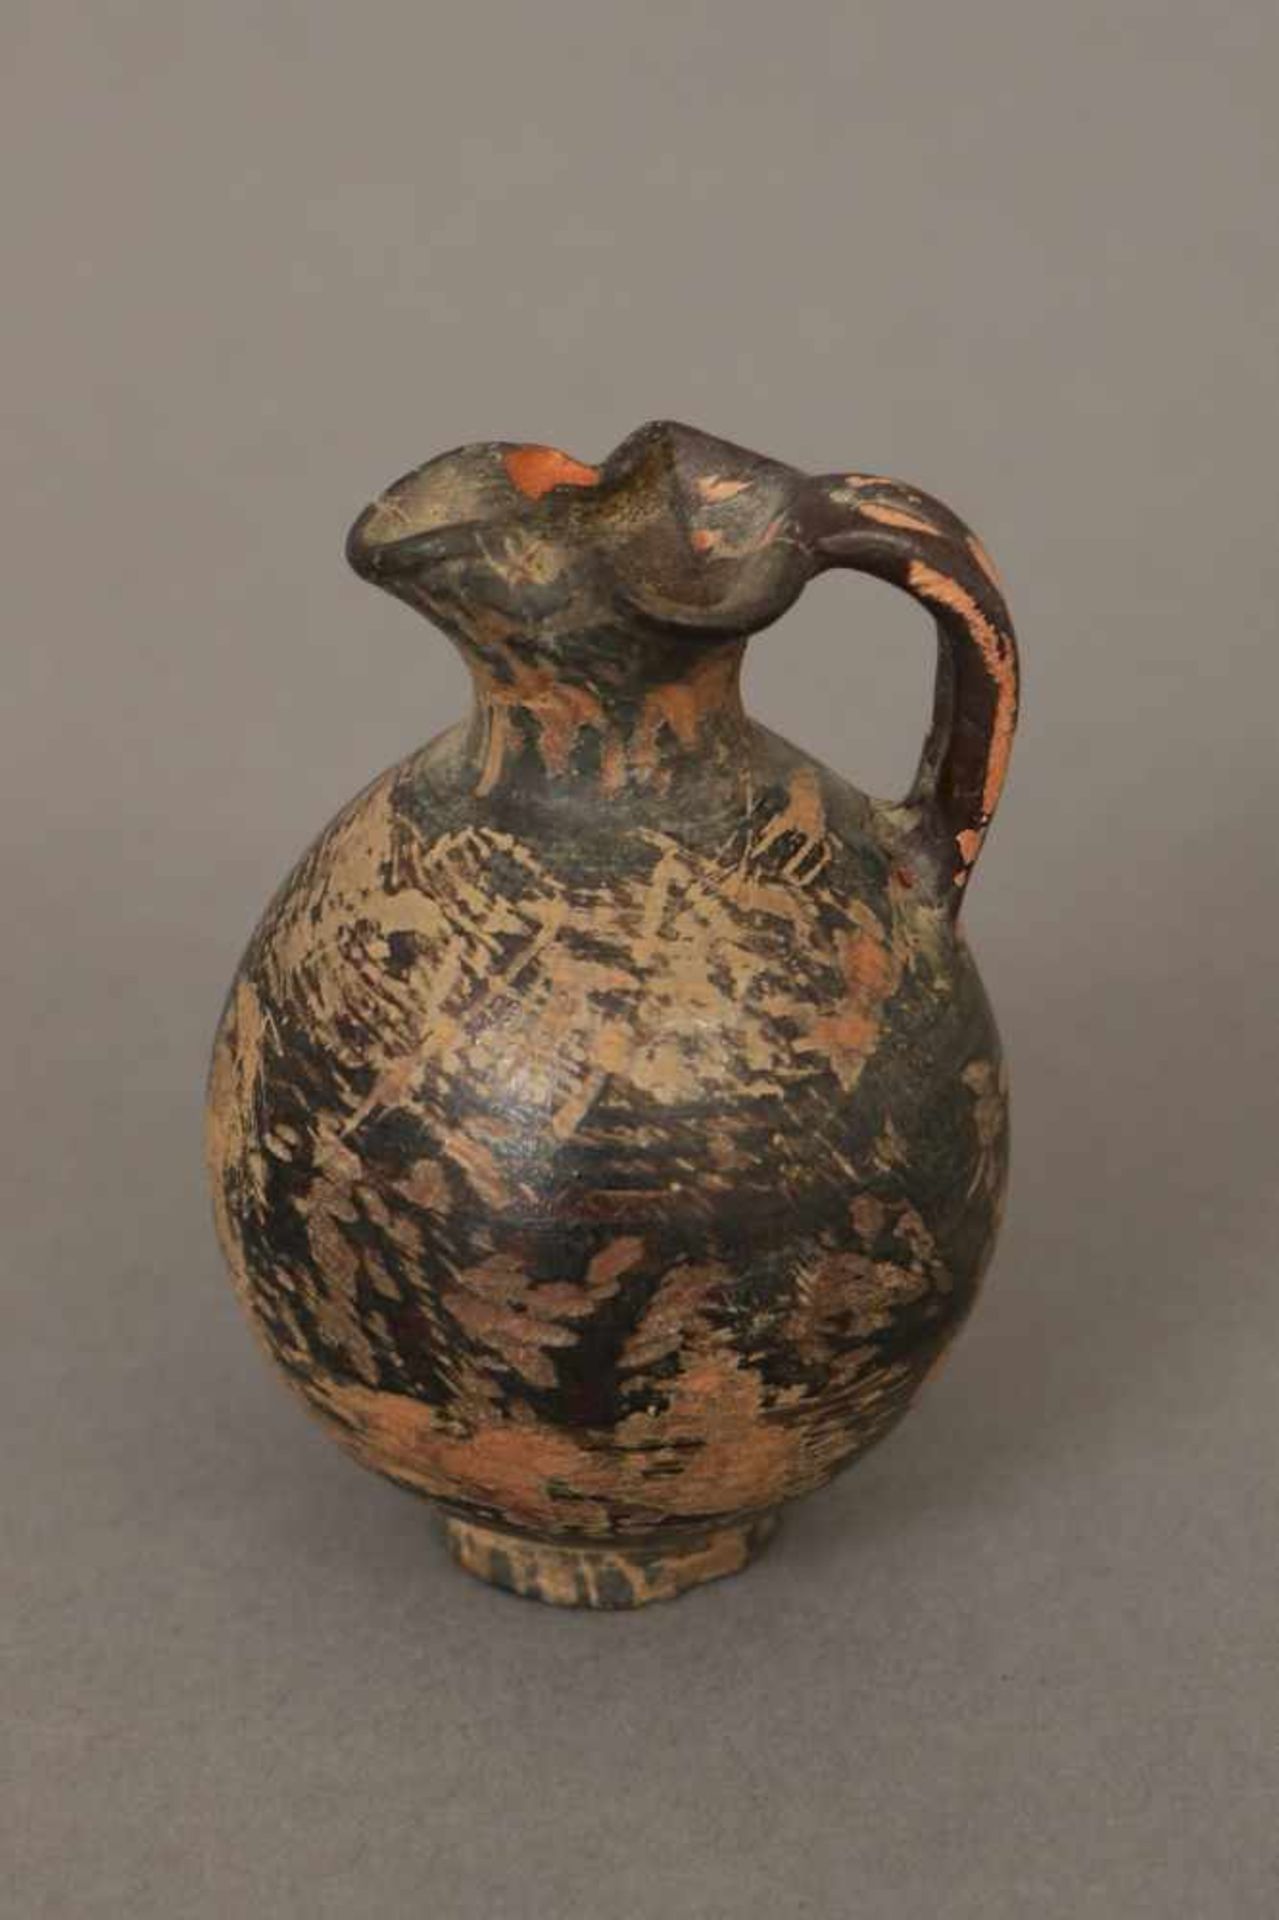 Kleines römisches Öl-/Salbengefäß in AmphorenformTerrakotta, dunkel patiniert, wohl römische